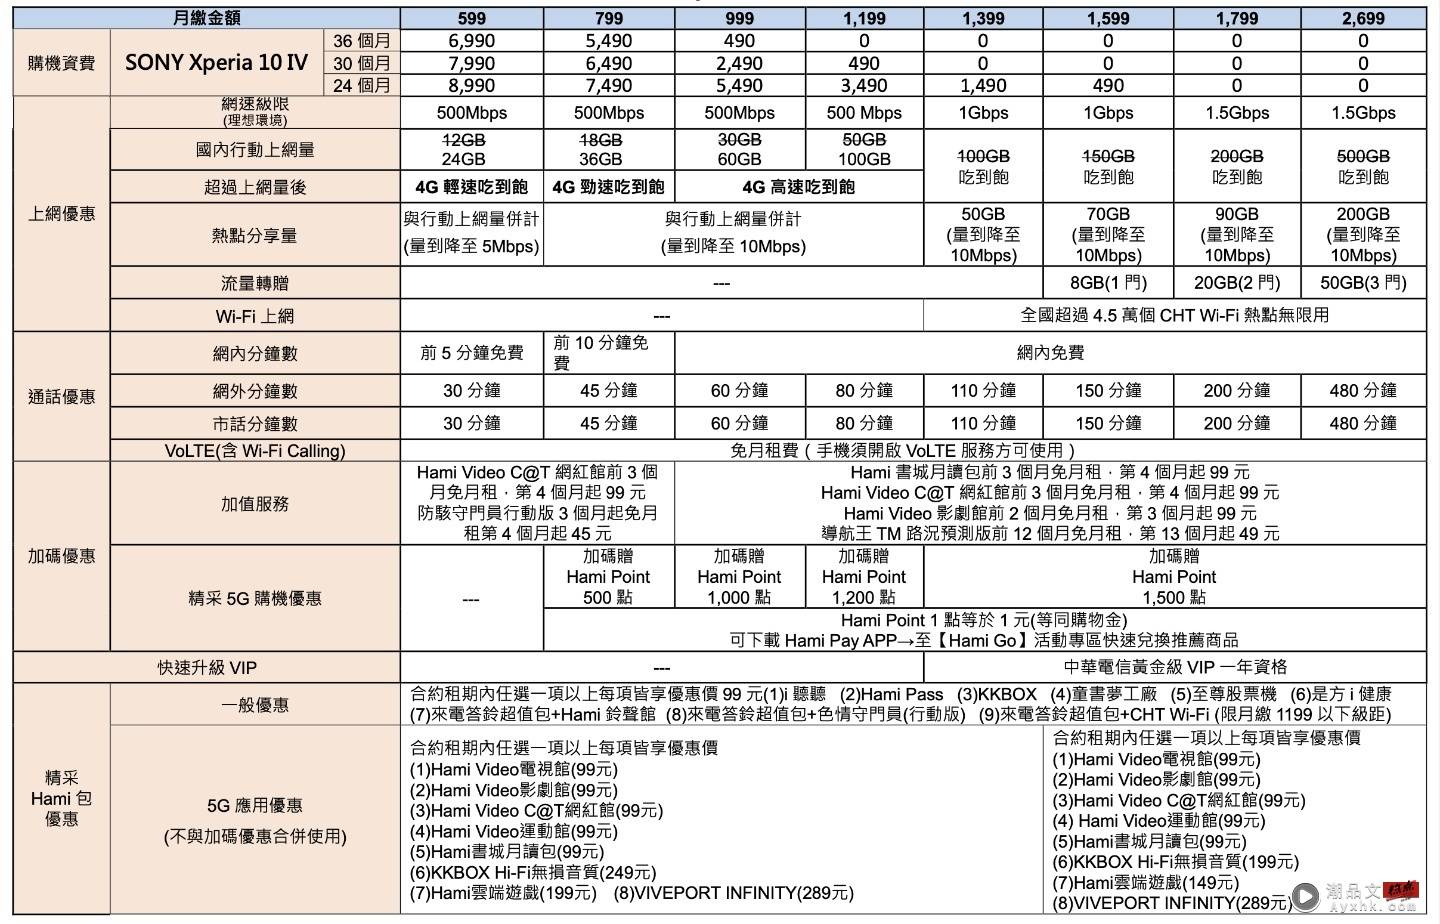 小巧精干 Sony Xperia 10 IV ，携手中国台湾三大电信推出优惠资费方案 数码科技 图2张